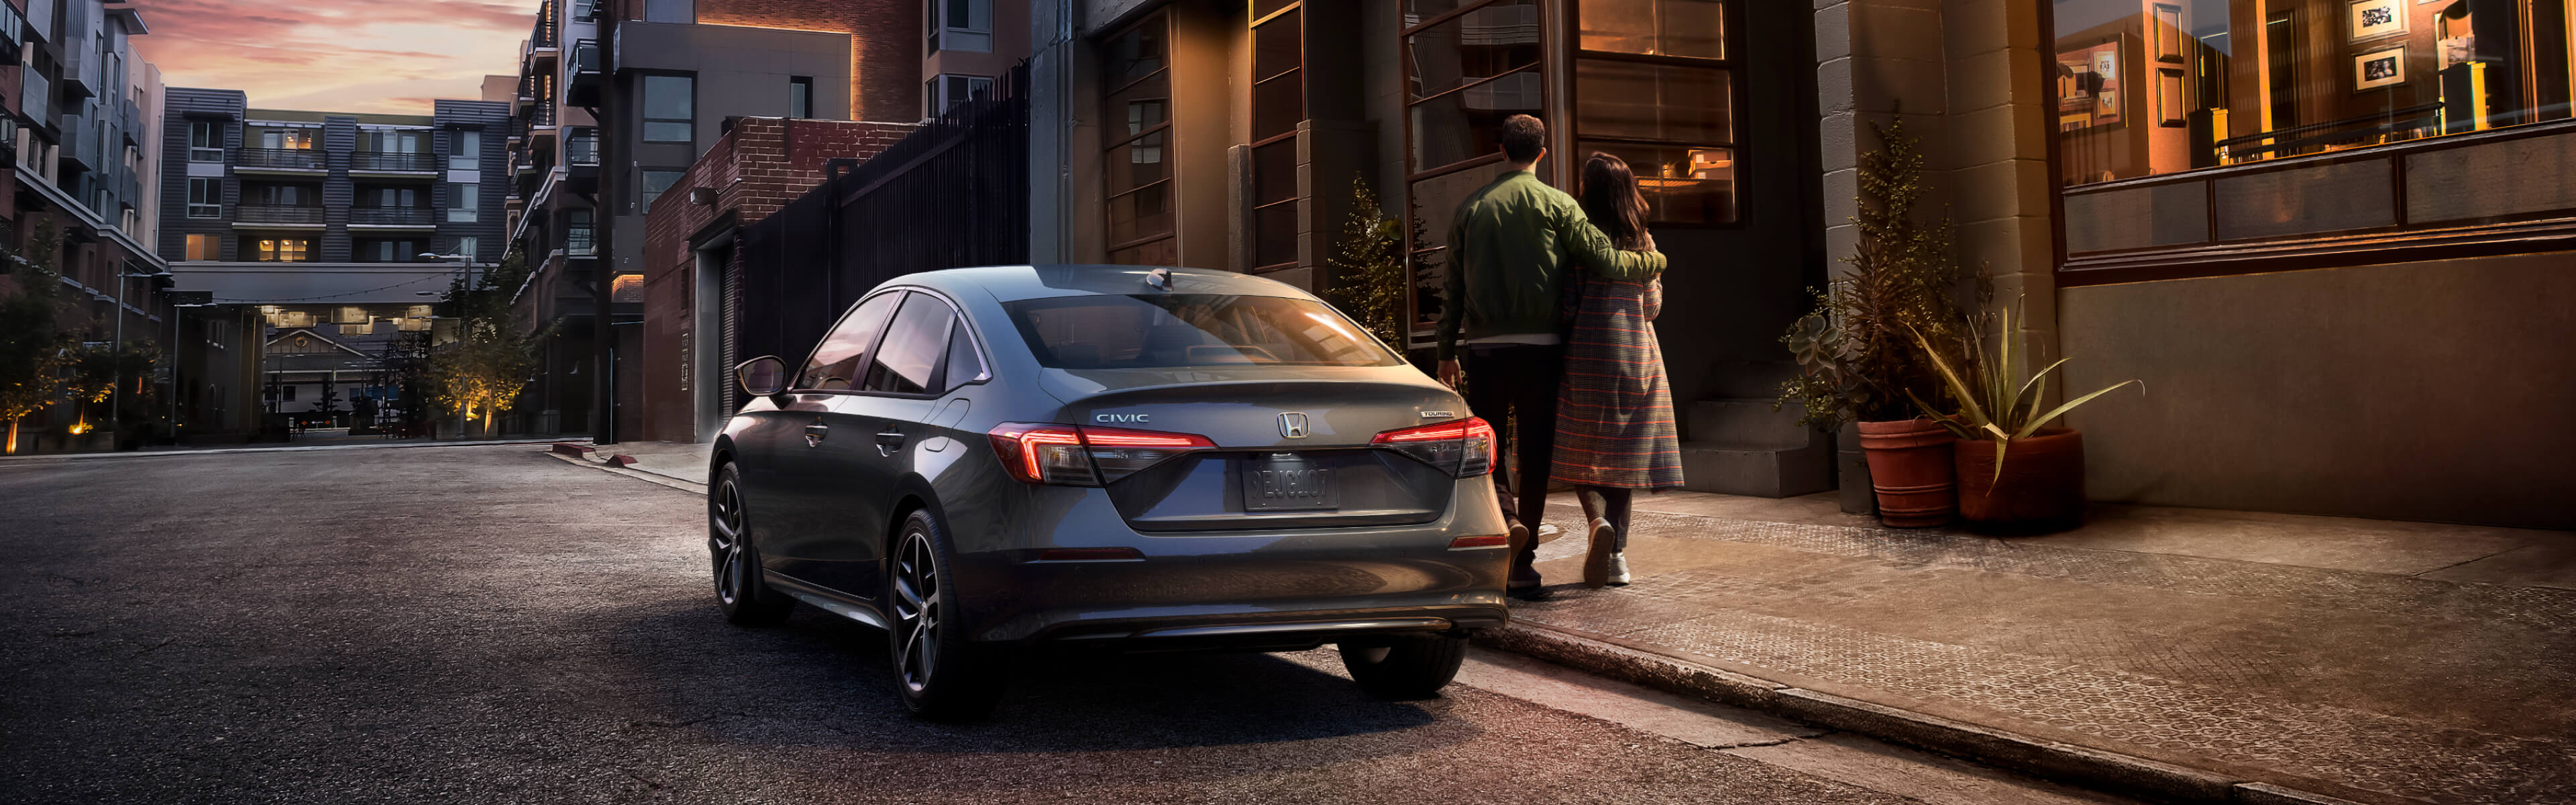 Vue arrière d’une Honda Civic 2022 grise stationnée dans un quartier résidentiel en début de soirée, avec un couple enlacé qui s’éloigne.